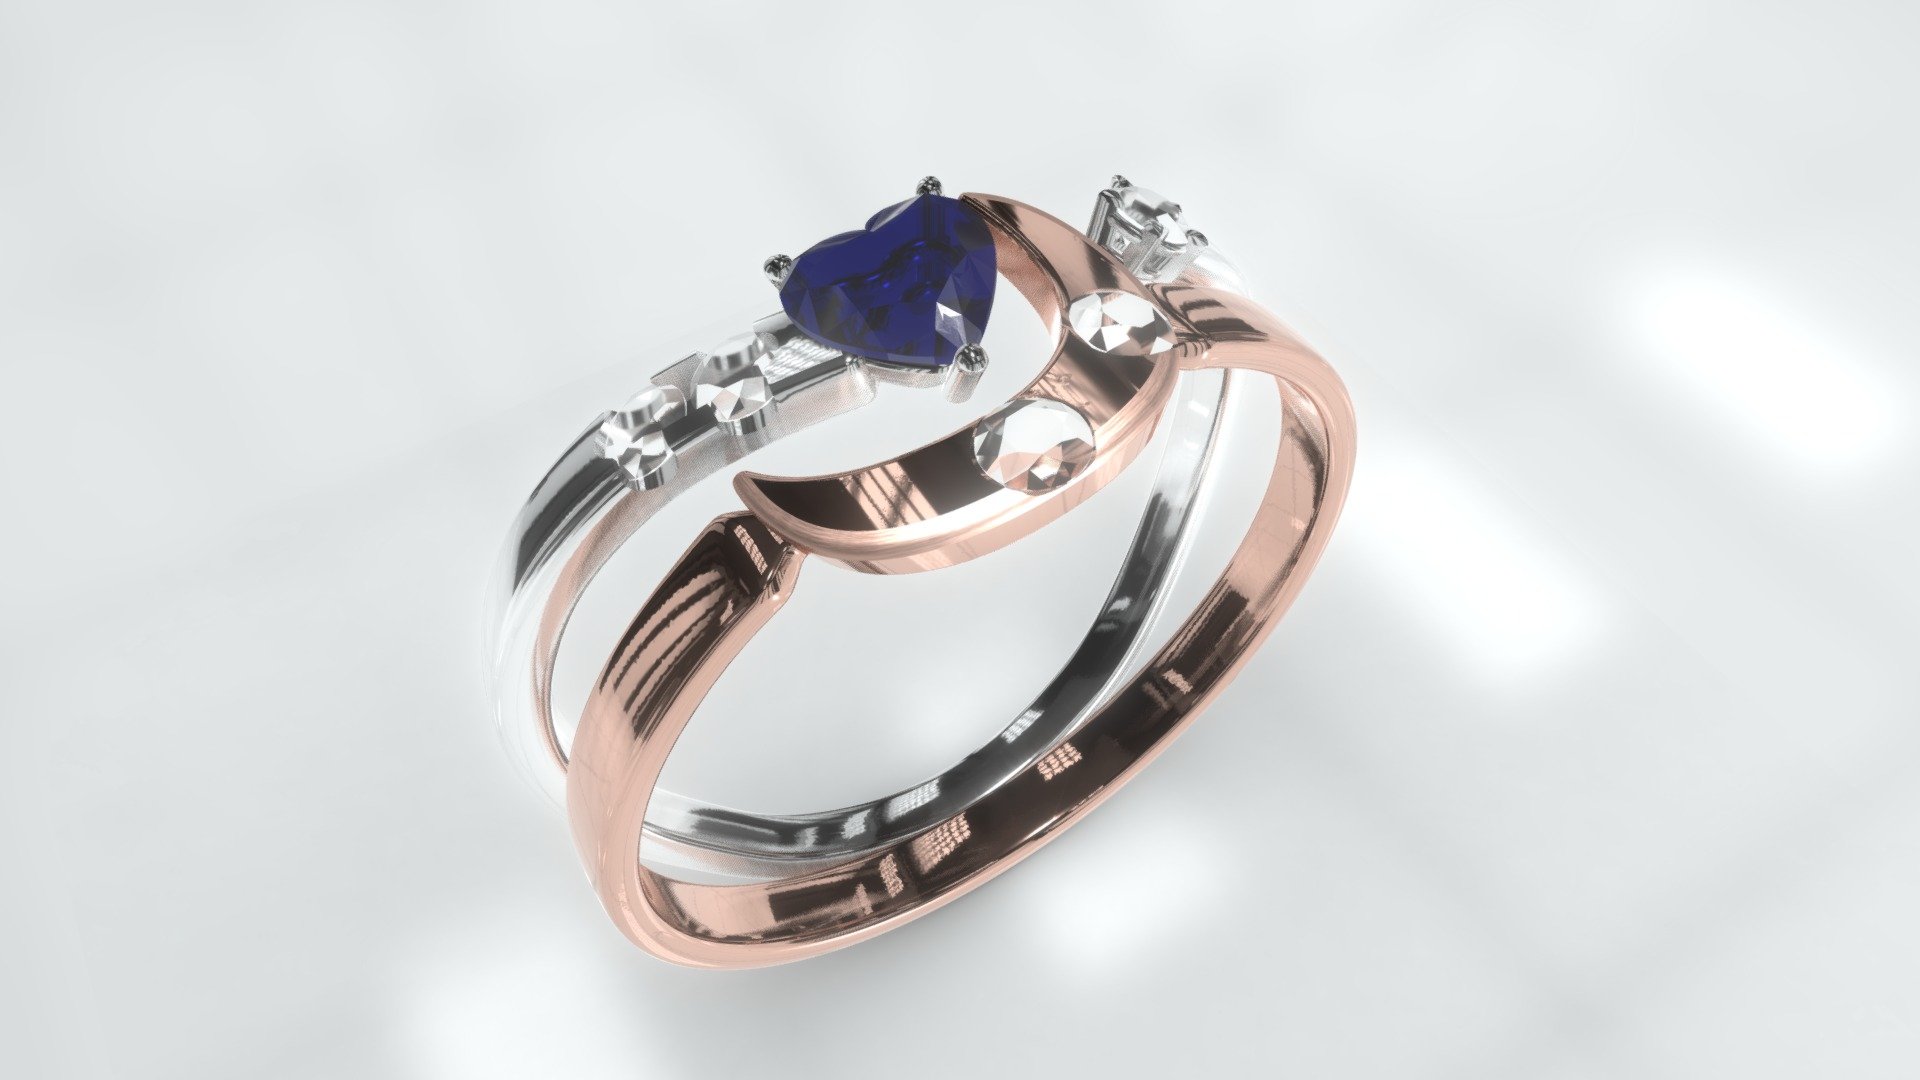 Custom Design Ring: 
-1 .15q Saphire Heart Shape gem
- 6 .005q Round diamonds
- 3 .01 q Round diamonds
- 2 .02q Round diamonds 

Size: 6 

Rose Gold 14k
White Gold 14k - Custom Saphire and diamonds ring - 3D model by Luis Rocha (@TherochaDesigner) 3d model